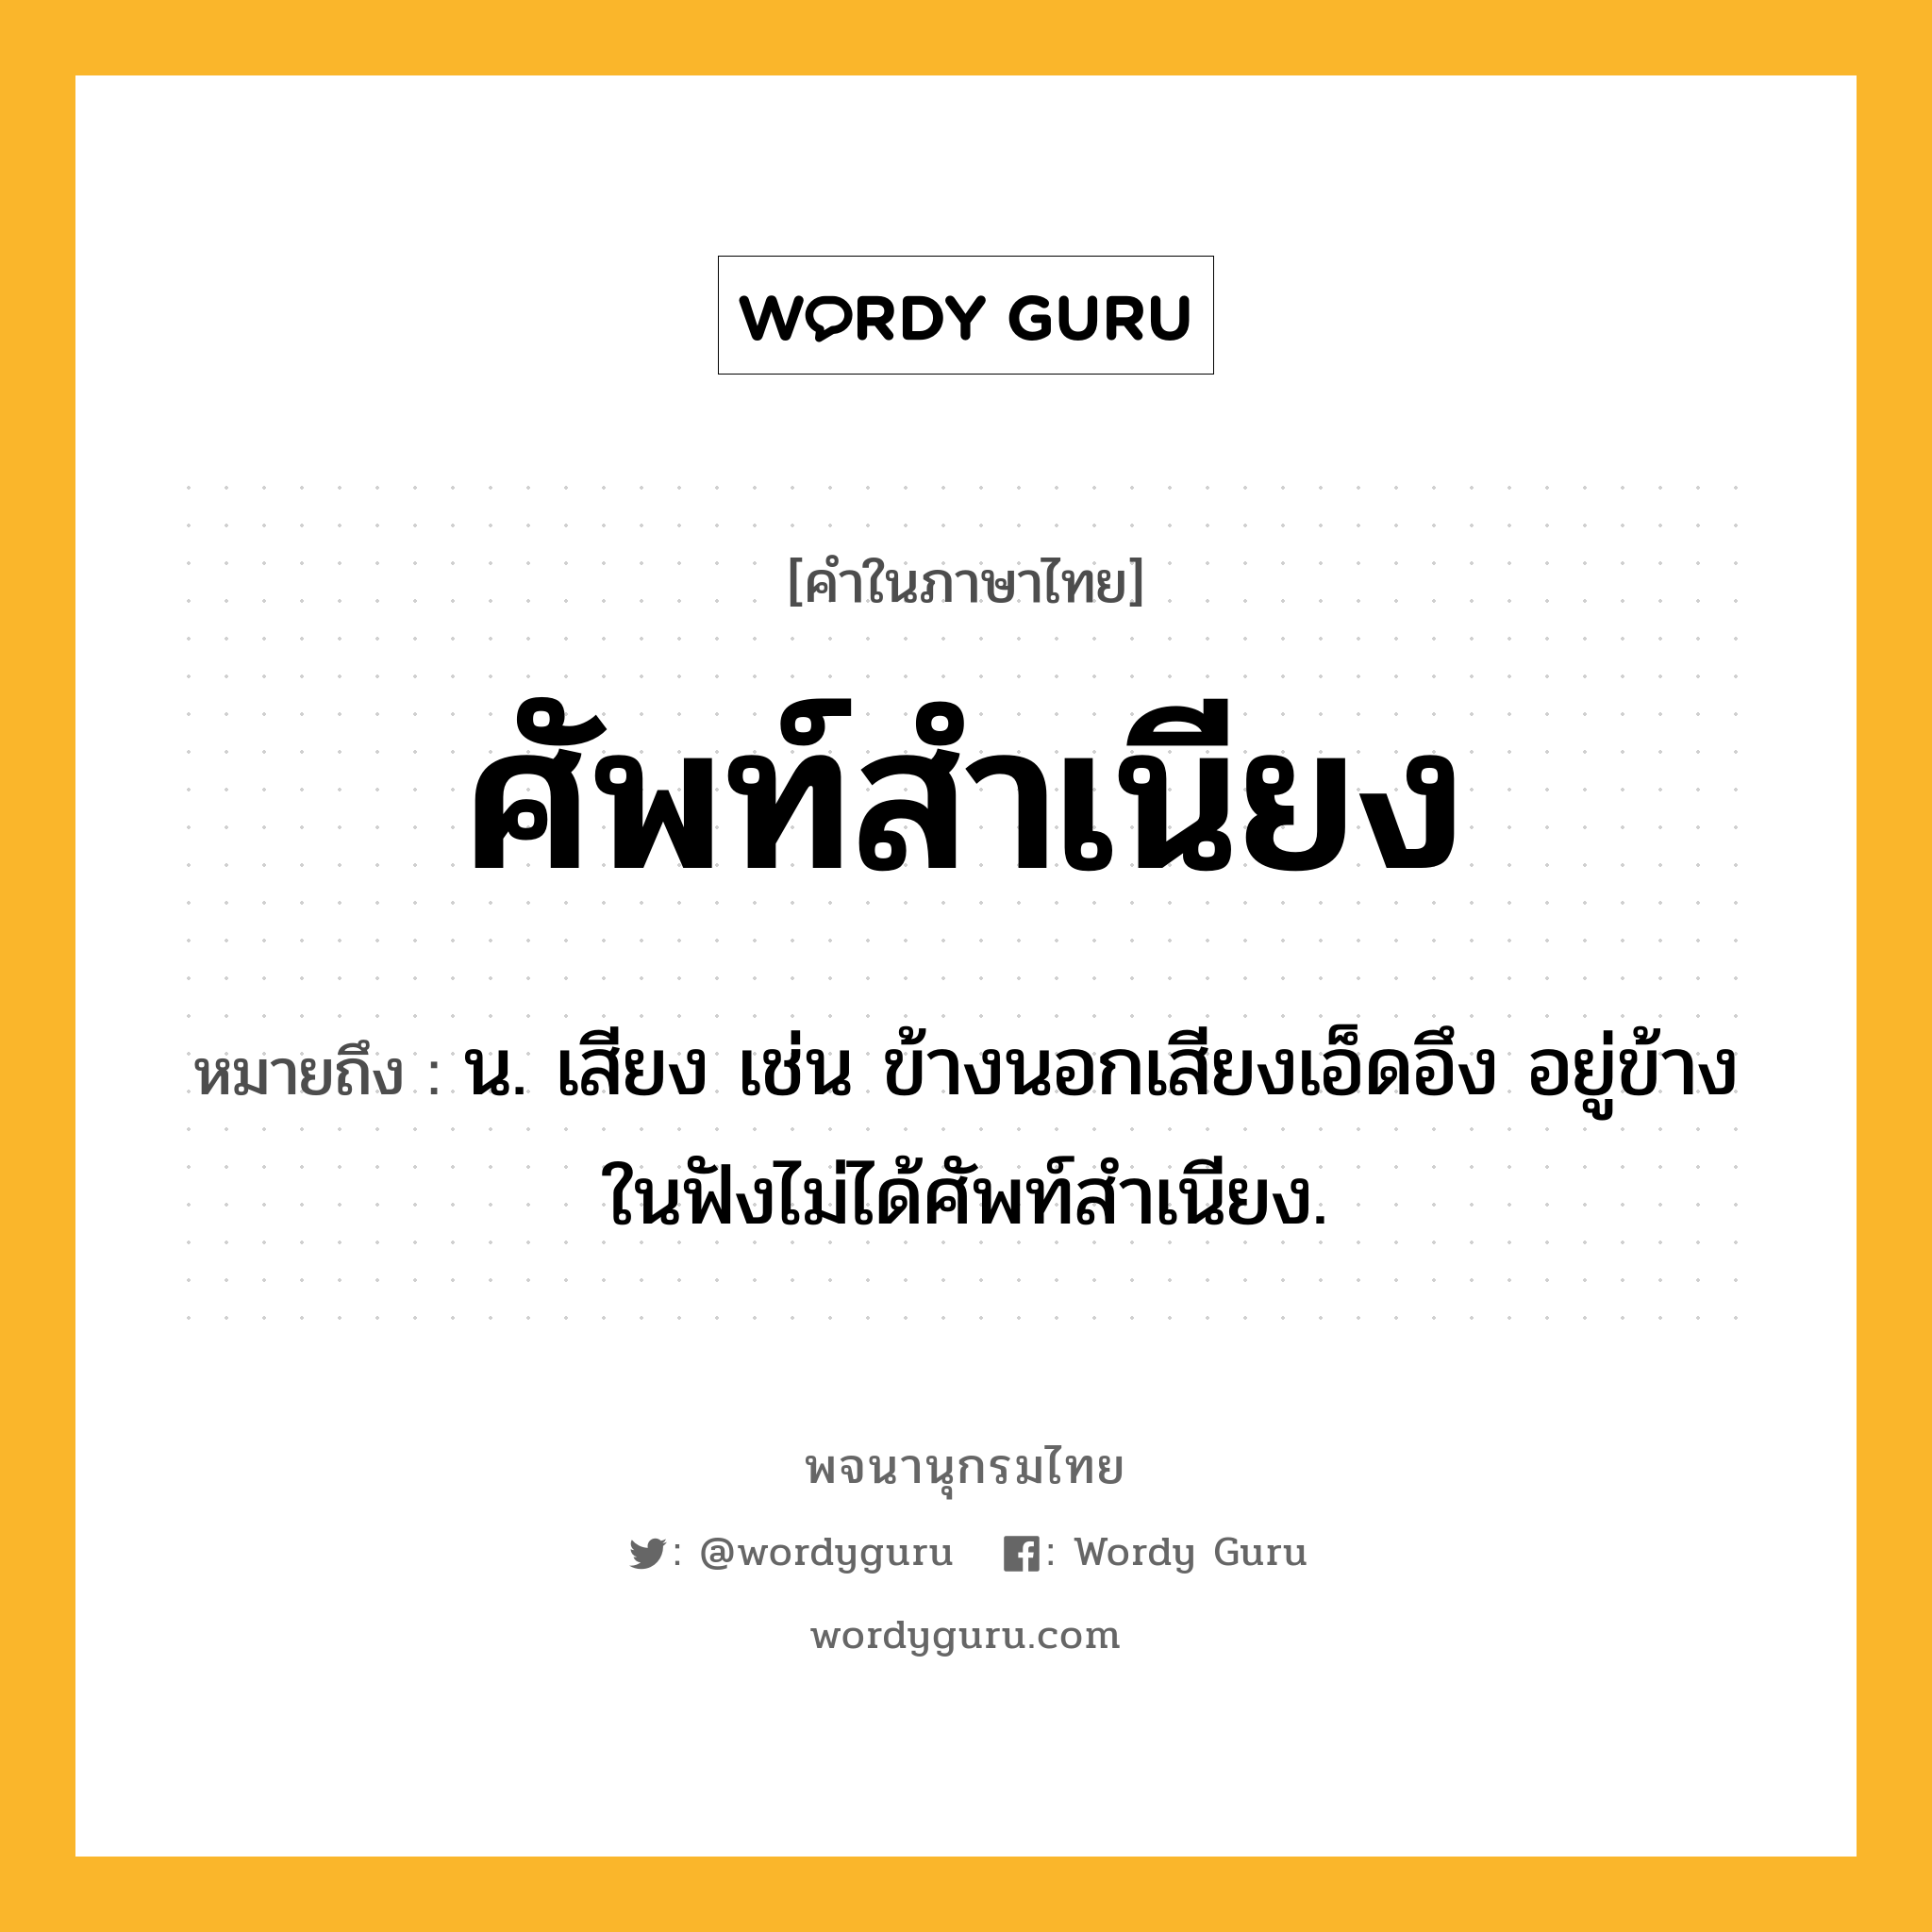 ศัพท์สำเนียง ความหมาย หมายถึงอะไร?, คำในภาษาไทย ศัพท์สำเนียง หมายถึง น. เสียง เช่น ข้างนอกเสียงเอ็ดอึง อยู่ข้างในฟังไม่ได้ศัพท์สำเนียง.